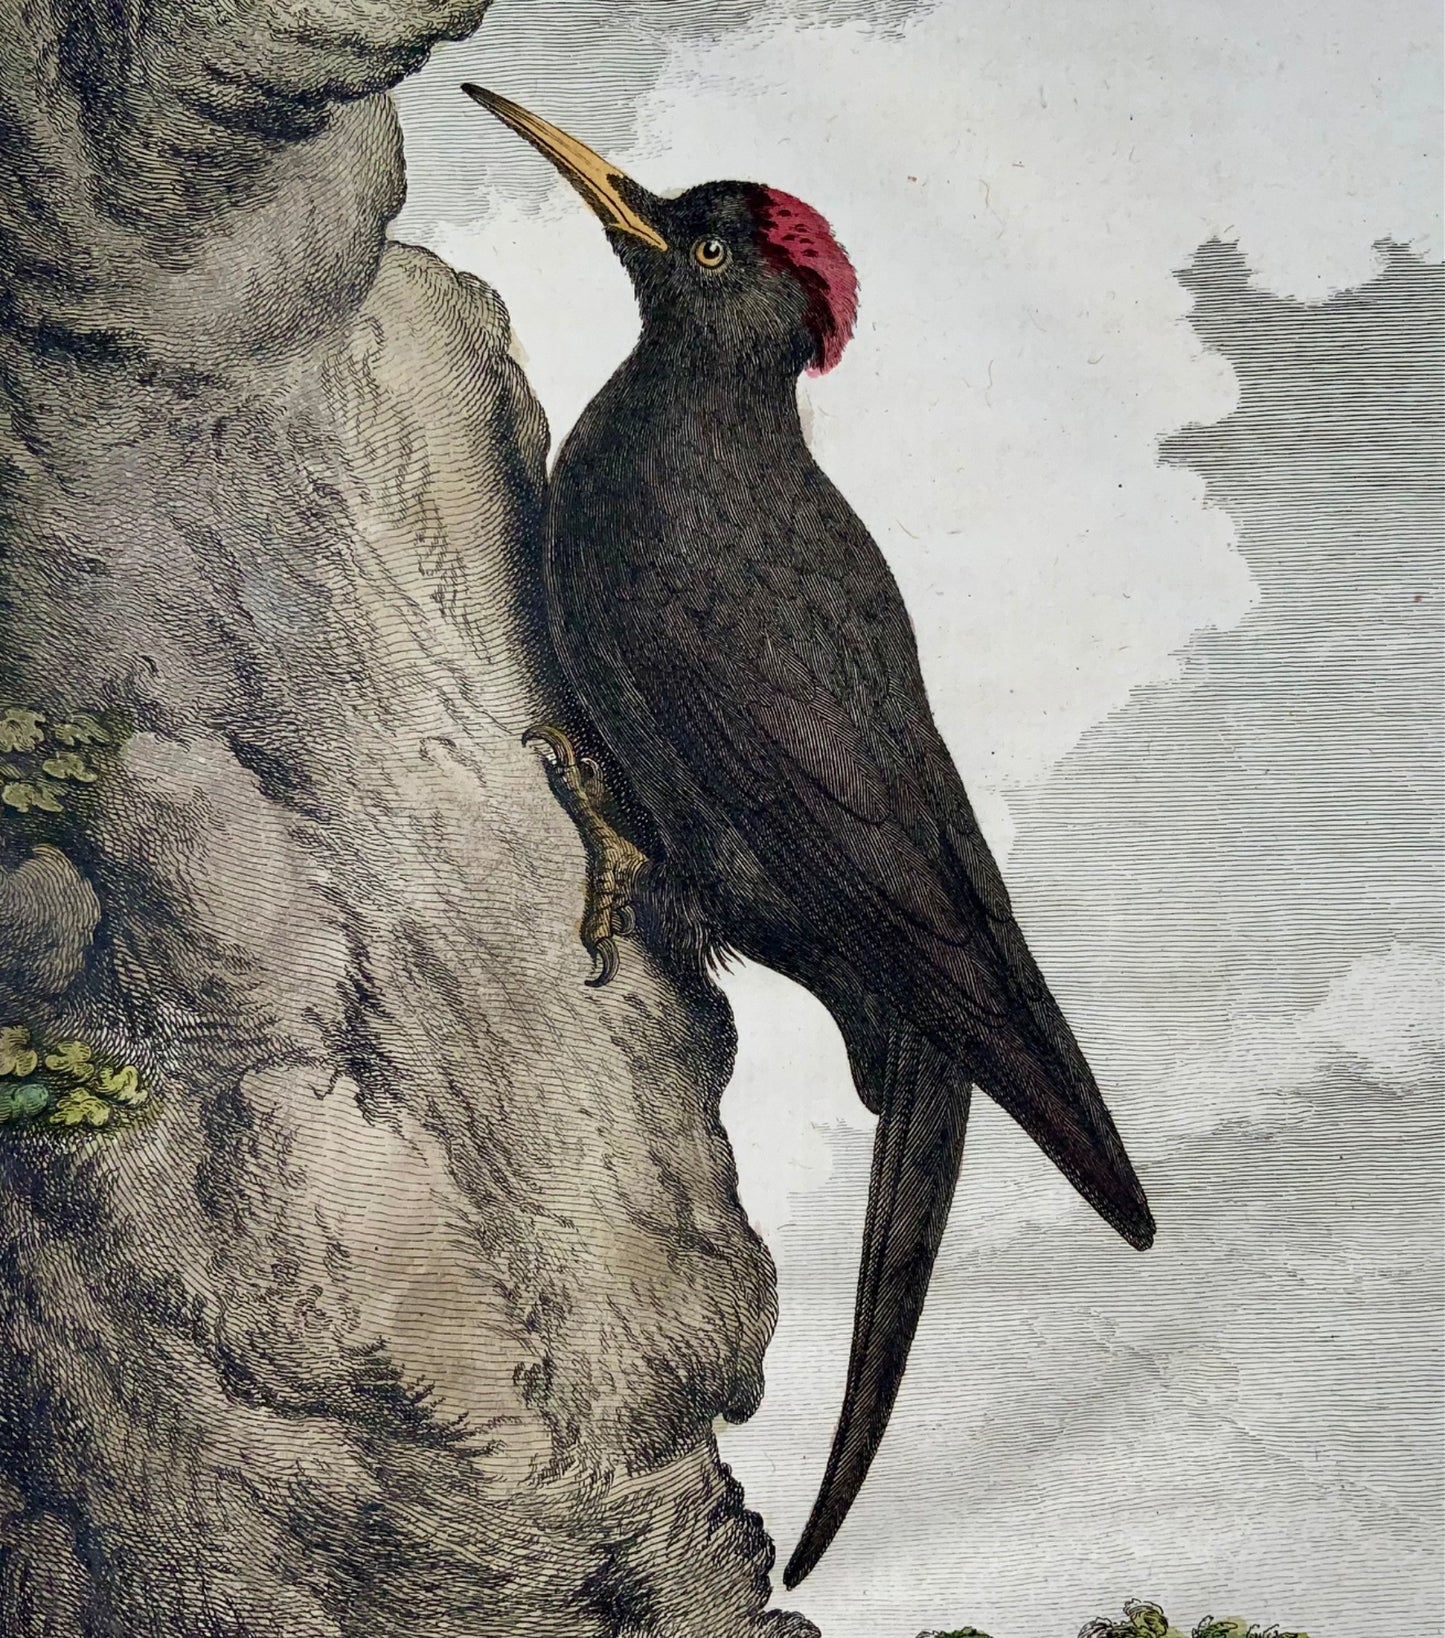 1771 Picchio nero, De Seve, ornitologia, edizione grande in quarto, incisione 